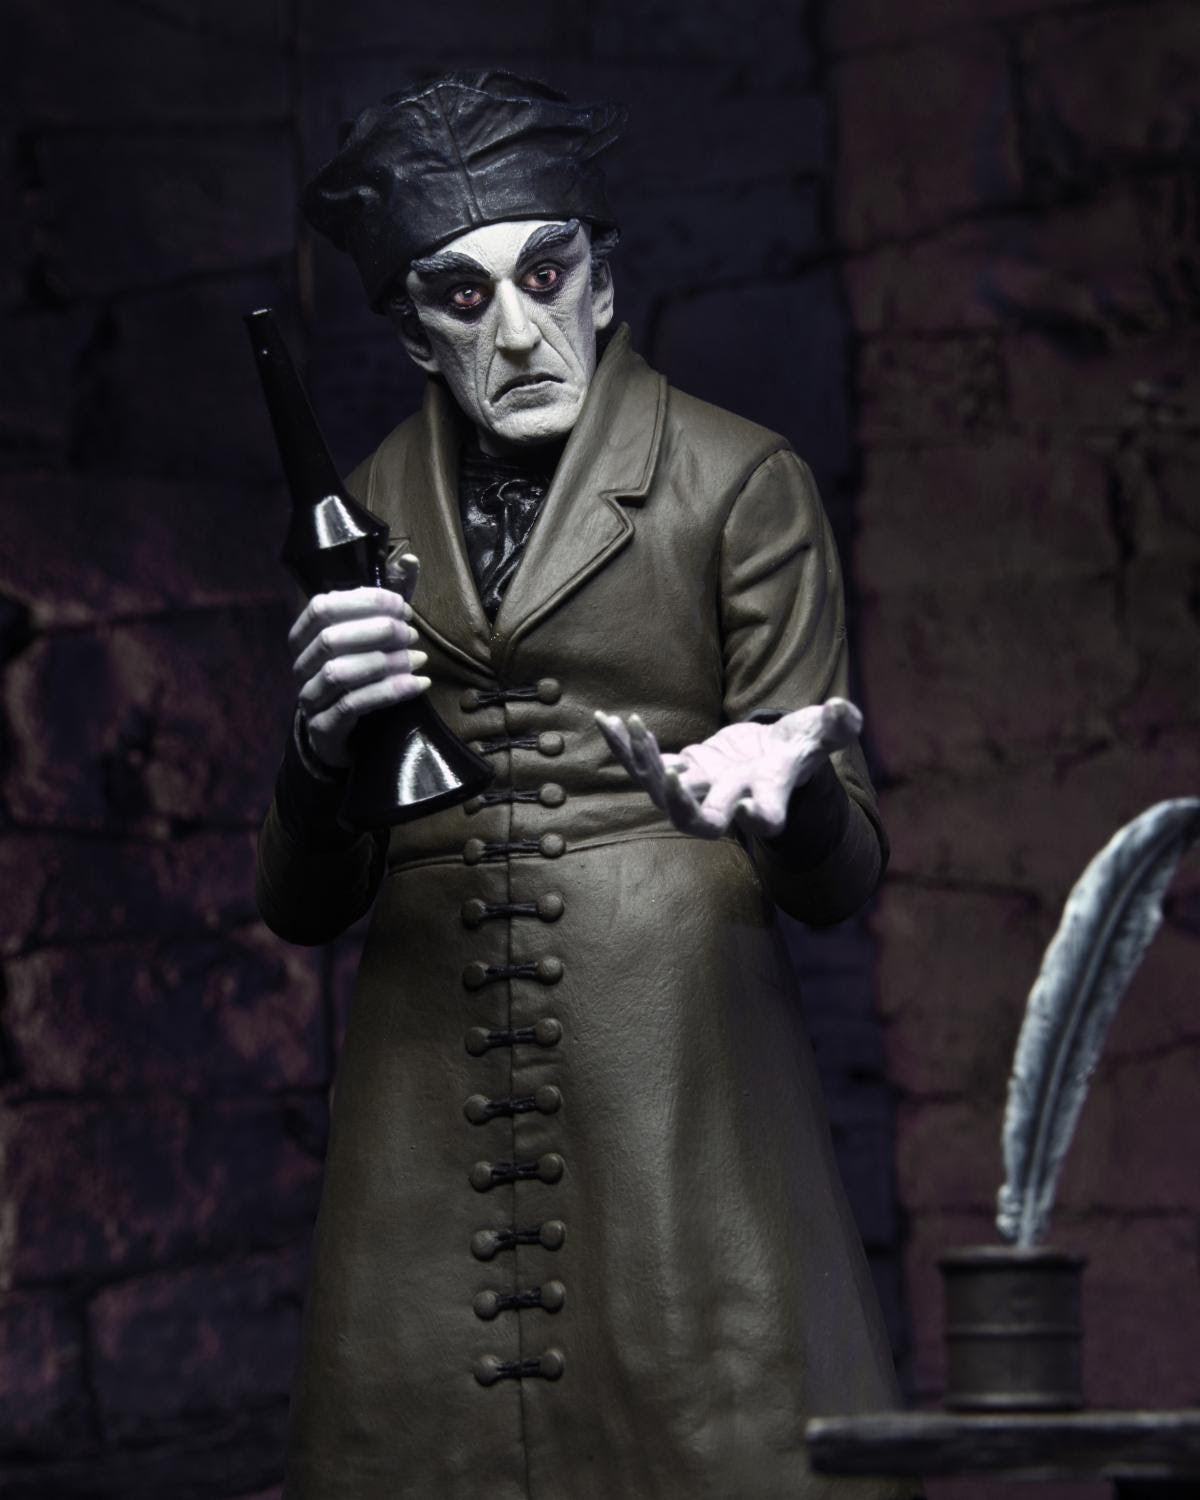 Nosferatu - 7" Scale Action Figure - Ultimate Count Orlok